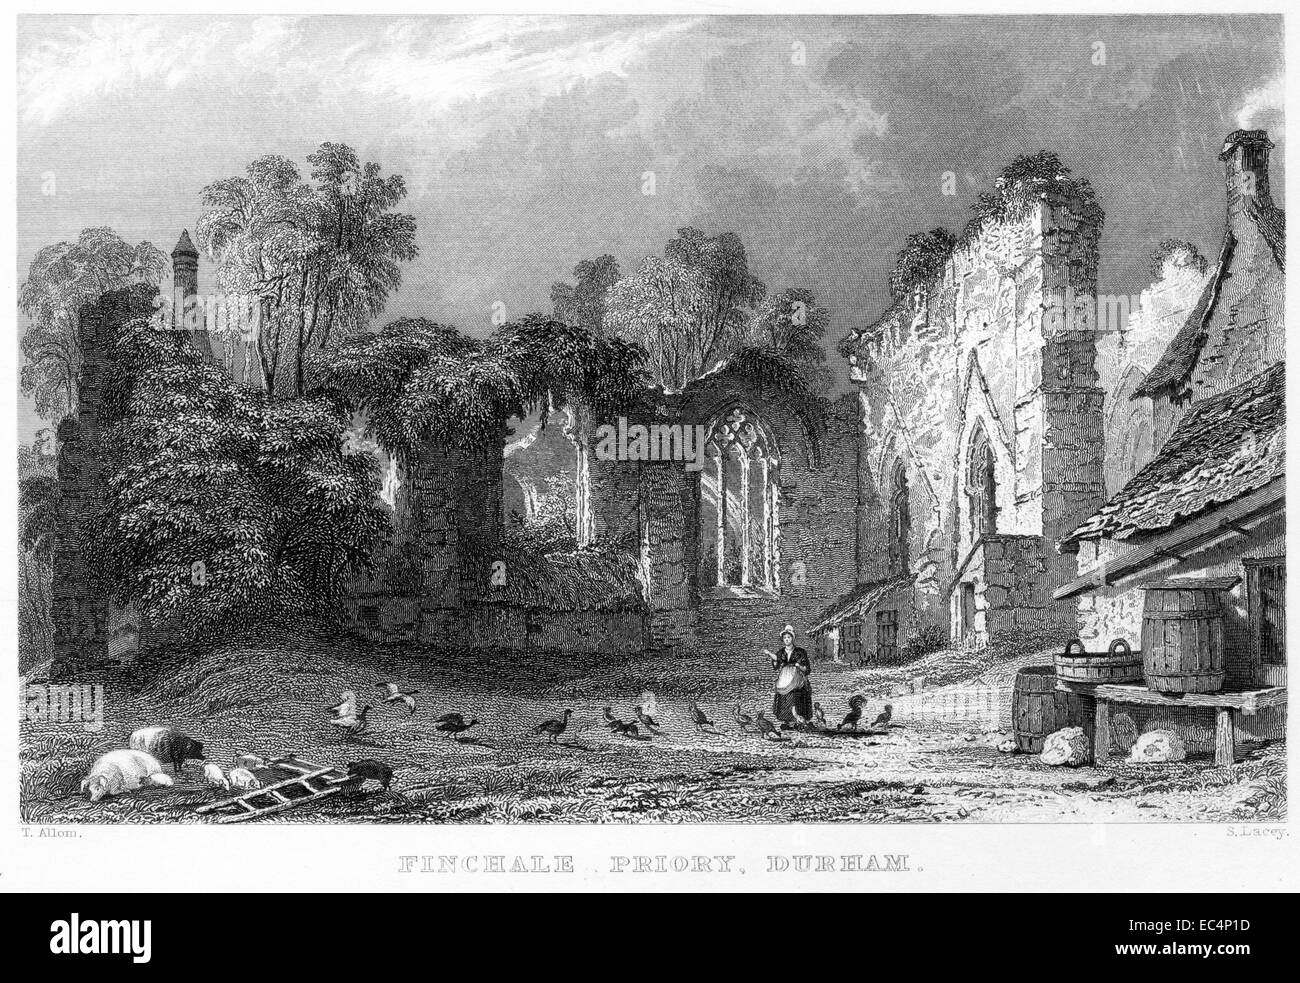 Eine Gravur mit dem Titel "Finchale Priory, Durham" Scannen mit hoher Auflösung aus einem Buch, veröffentlicht im Jahre 1834. Stockfoto